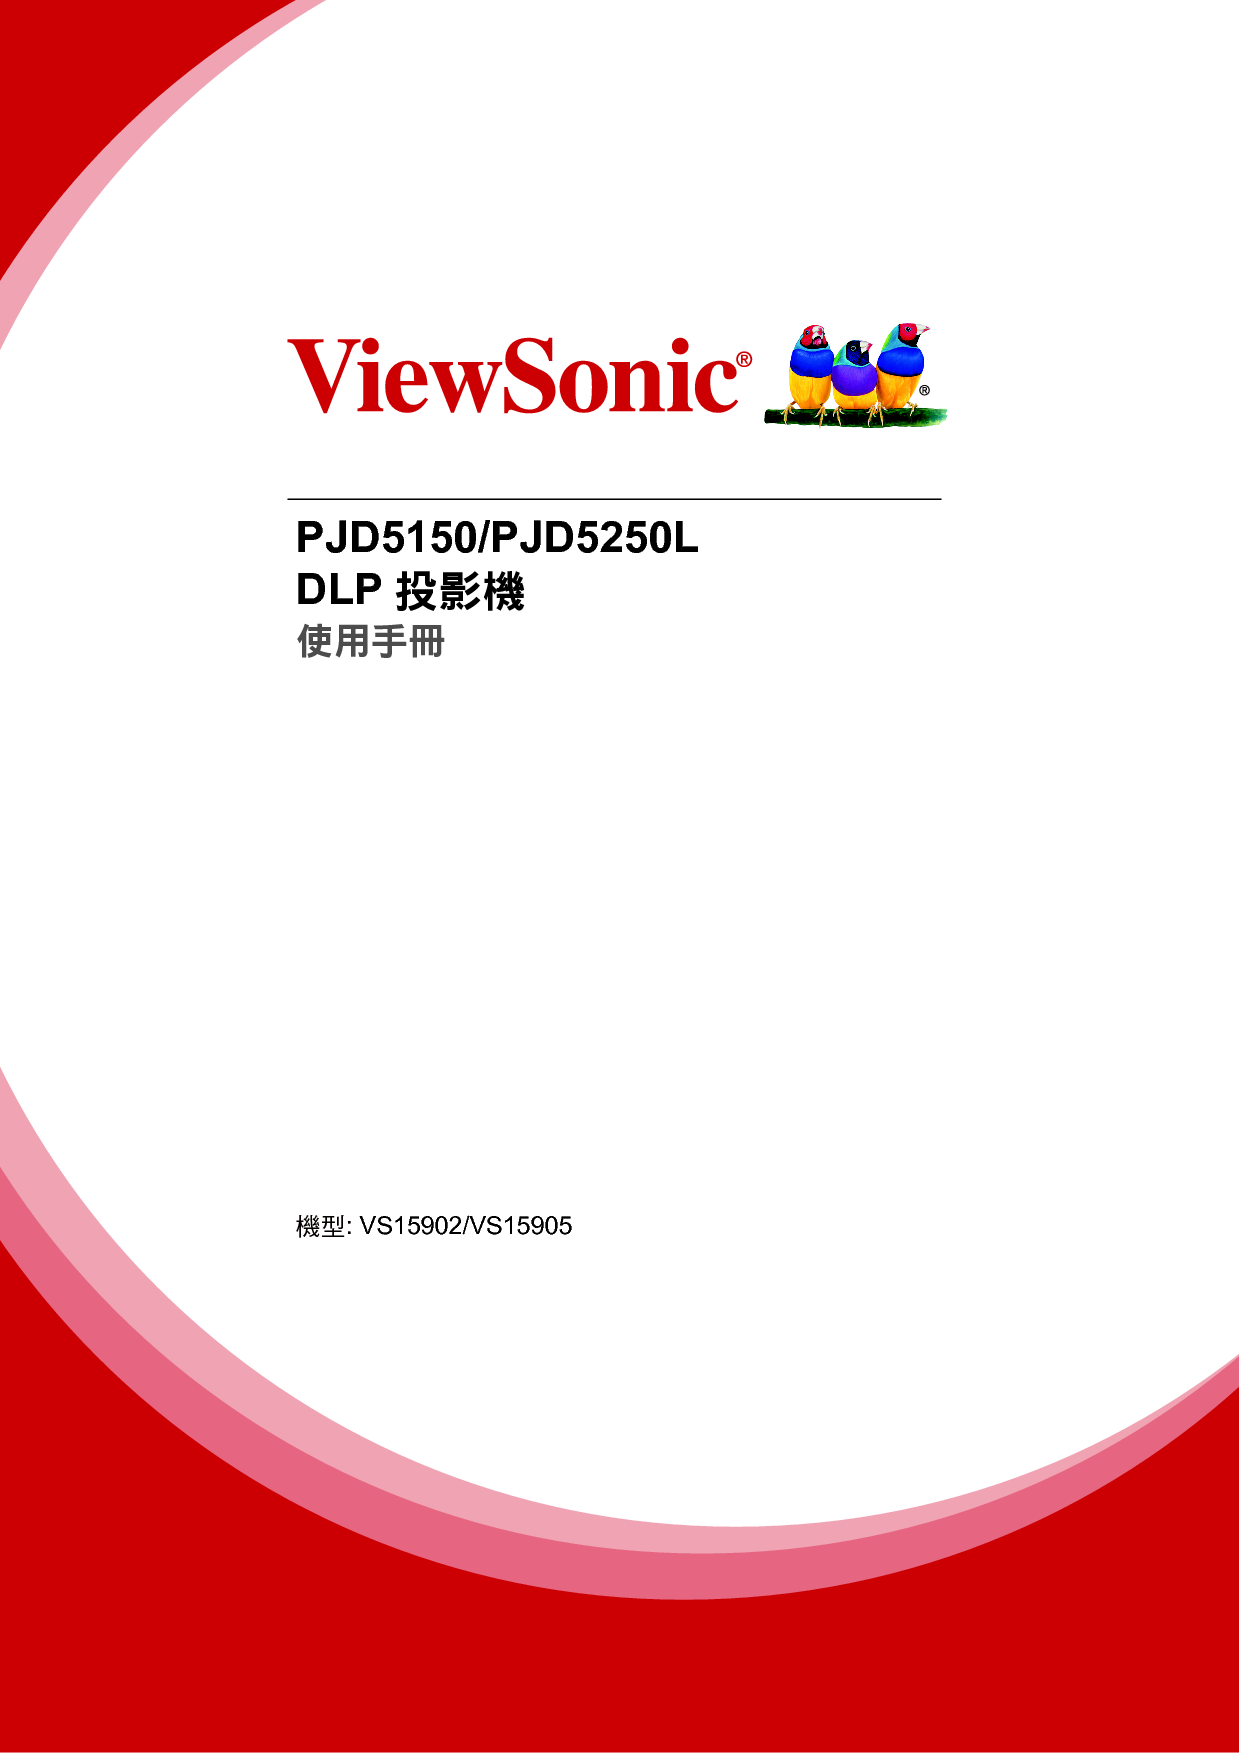 优派 ViewSonic PJD5150 繁体使用说明书 封面